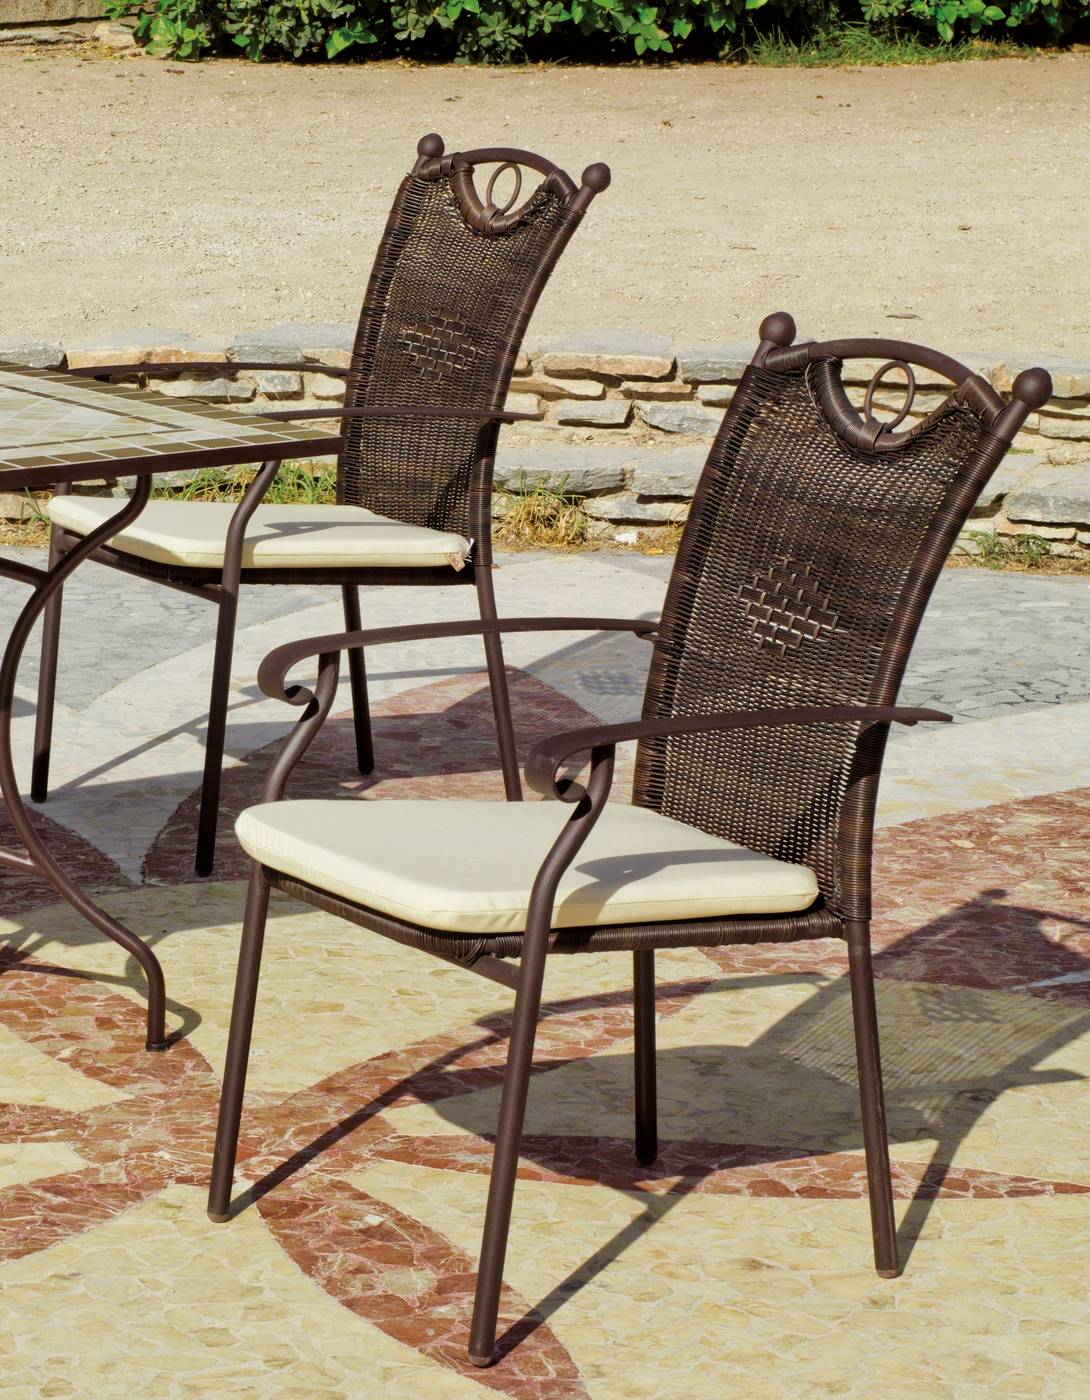 Set Mosaico Dadevil-Beldey 90-6 - Conjunto de forja color bronce: mesa redonda de acero forjado, con tablero mosaico de 90 cm. + 4 sillones de acero y wicker